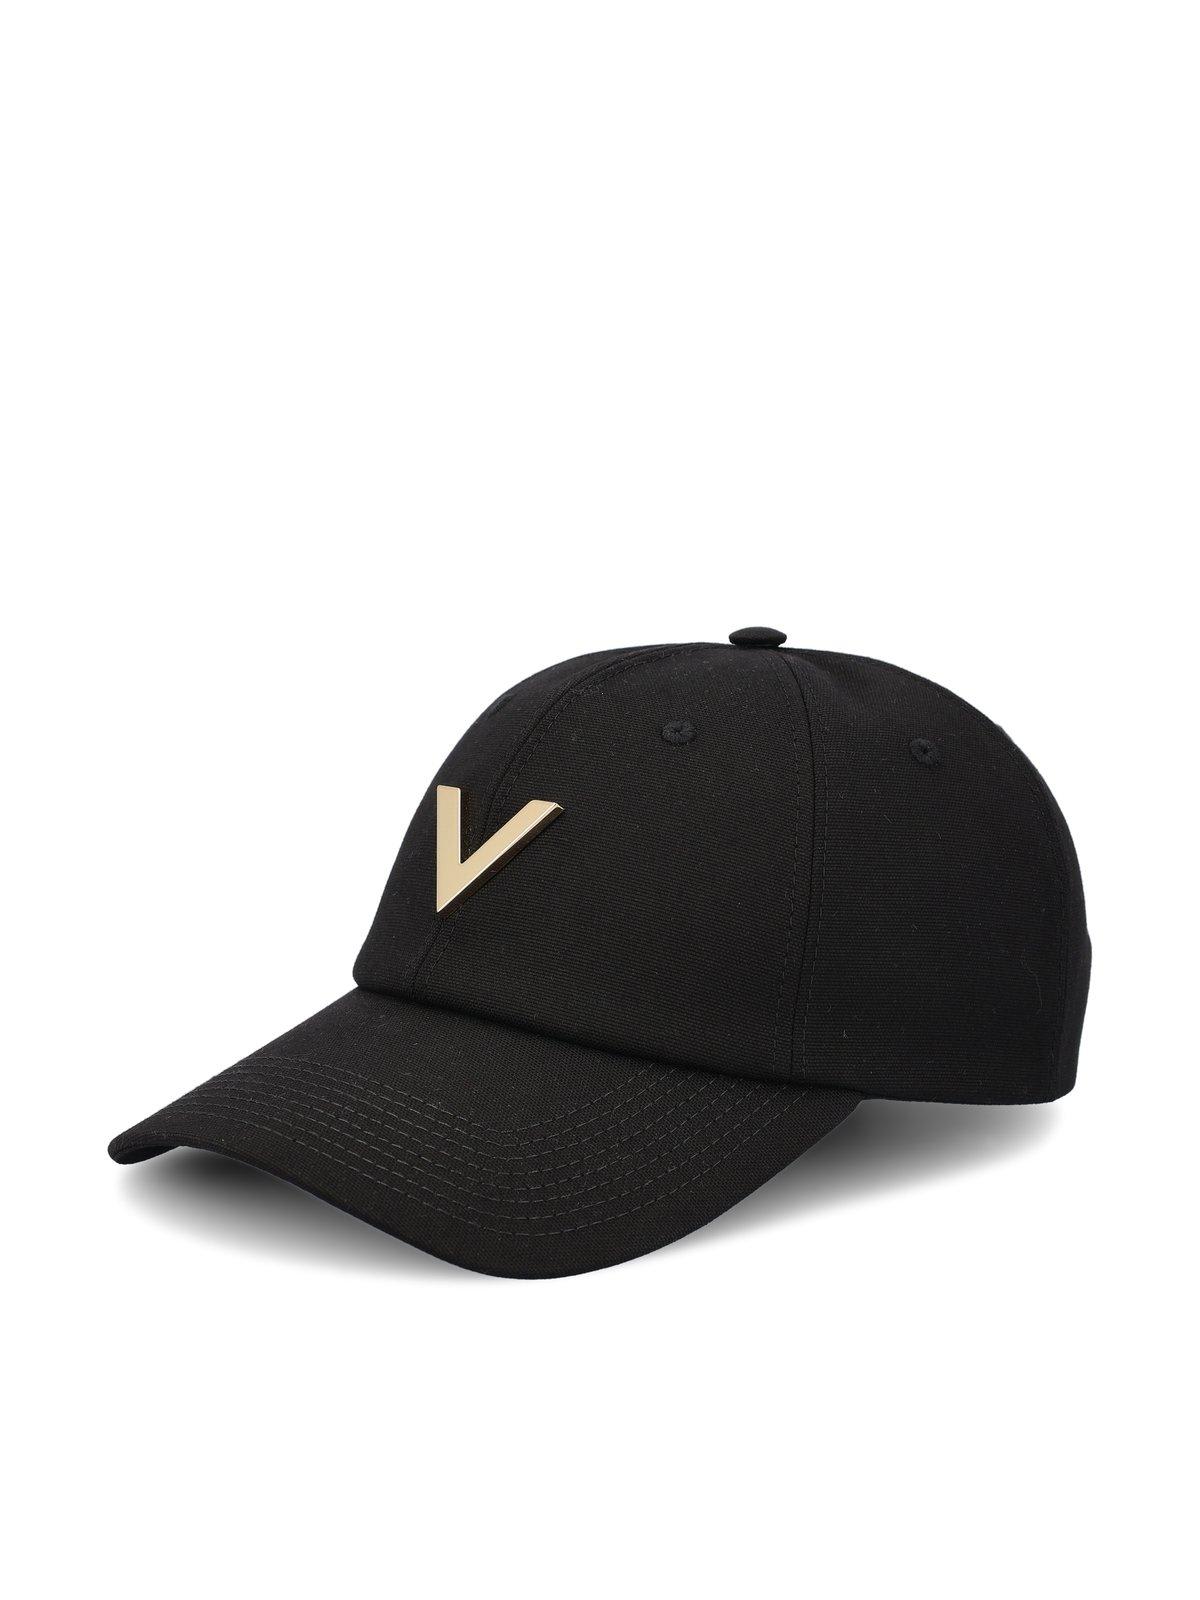 Shop Valentino Garavani Vlogo Baseball Cap In Black